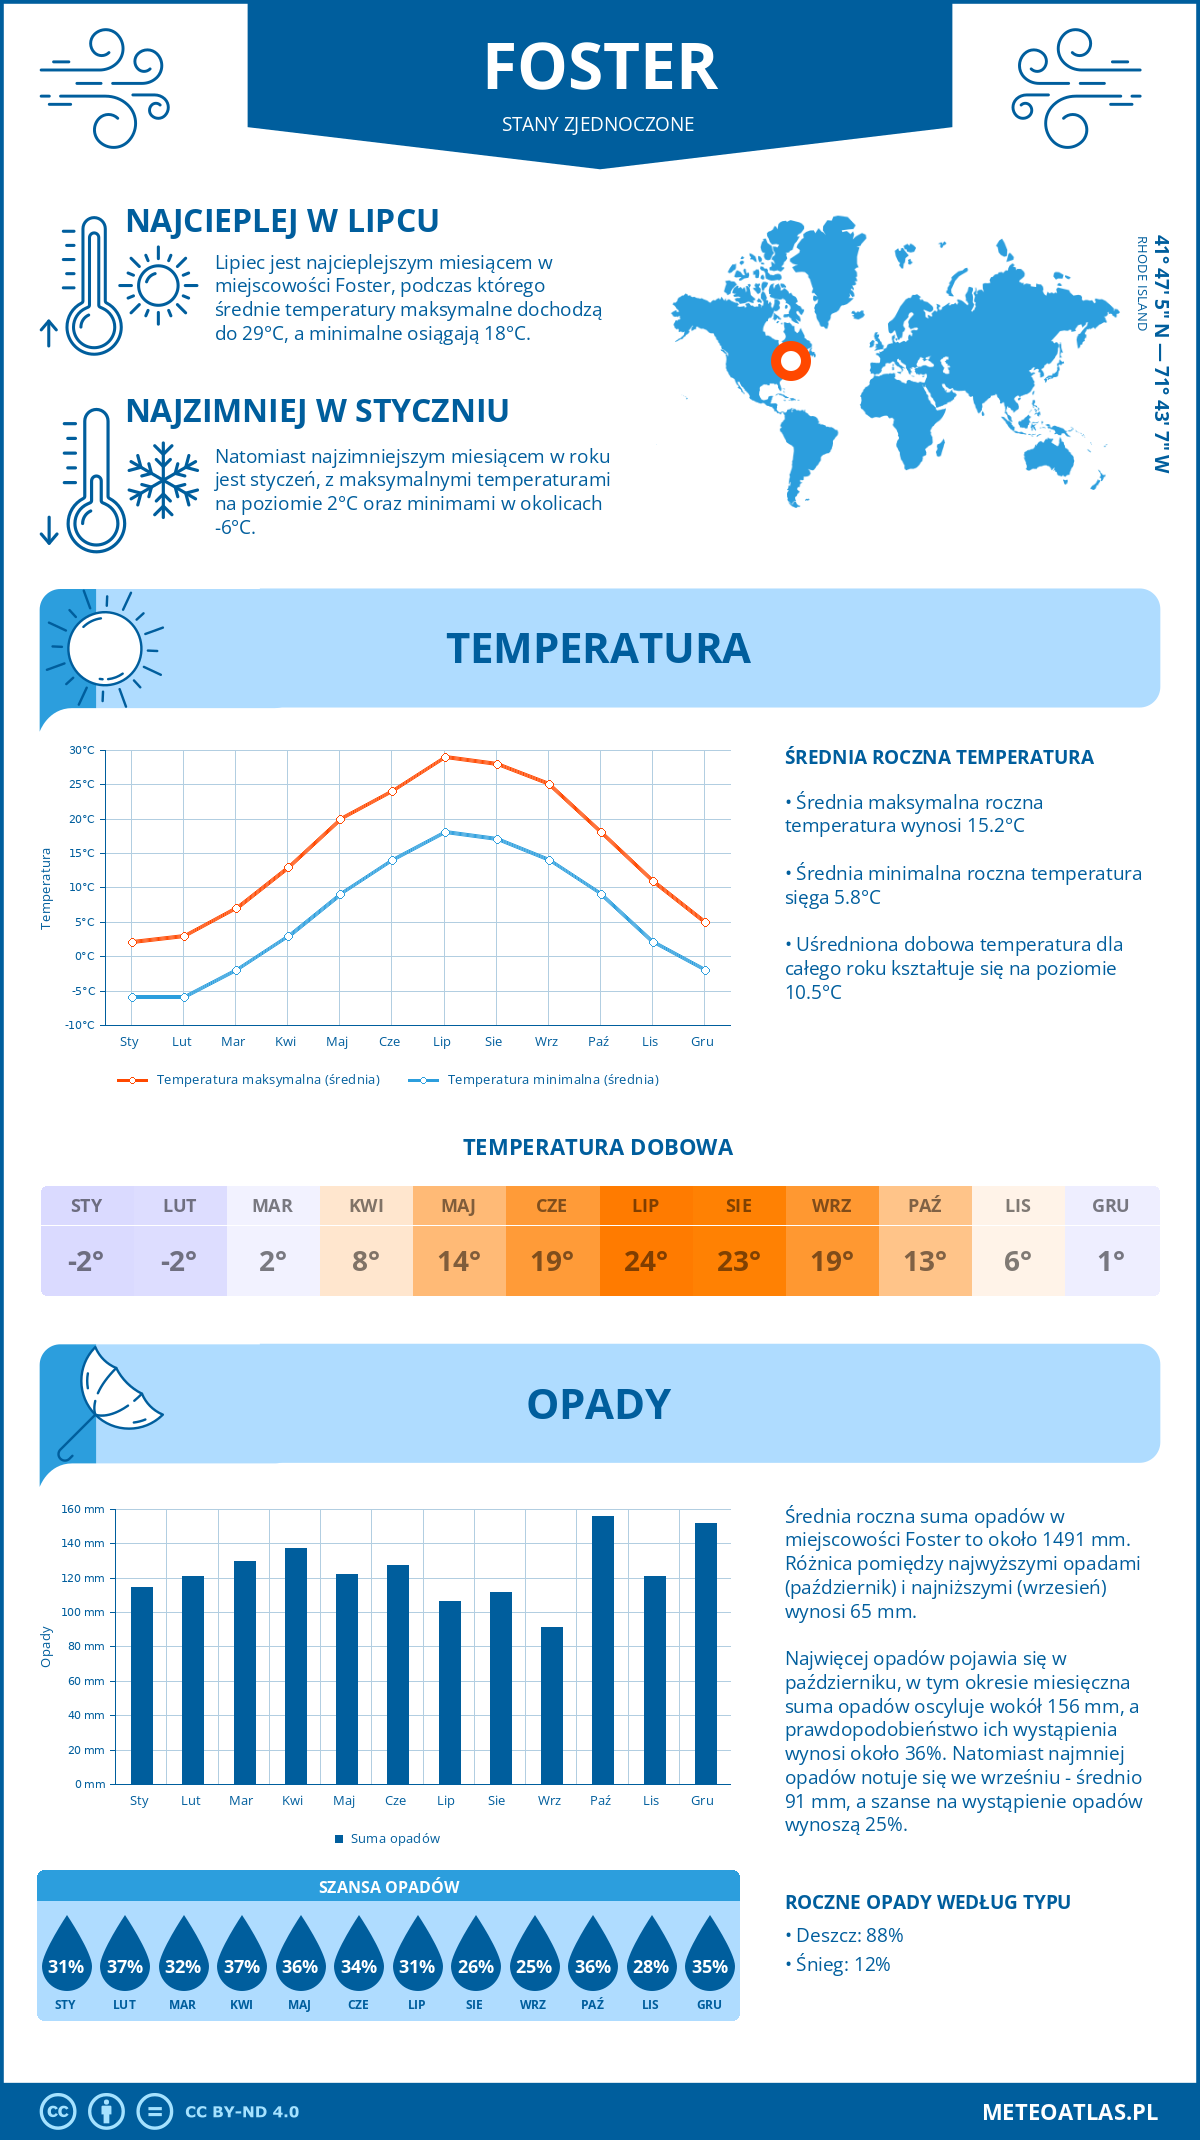 Pogoda Foster (Stany Zjednoczone). Temperatura oraz opady.